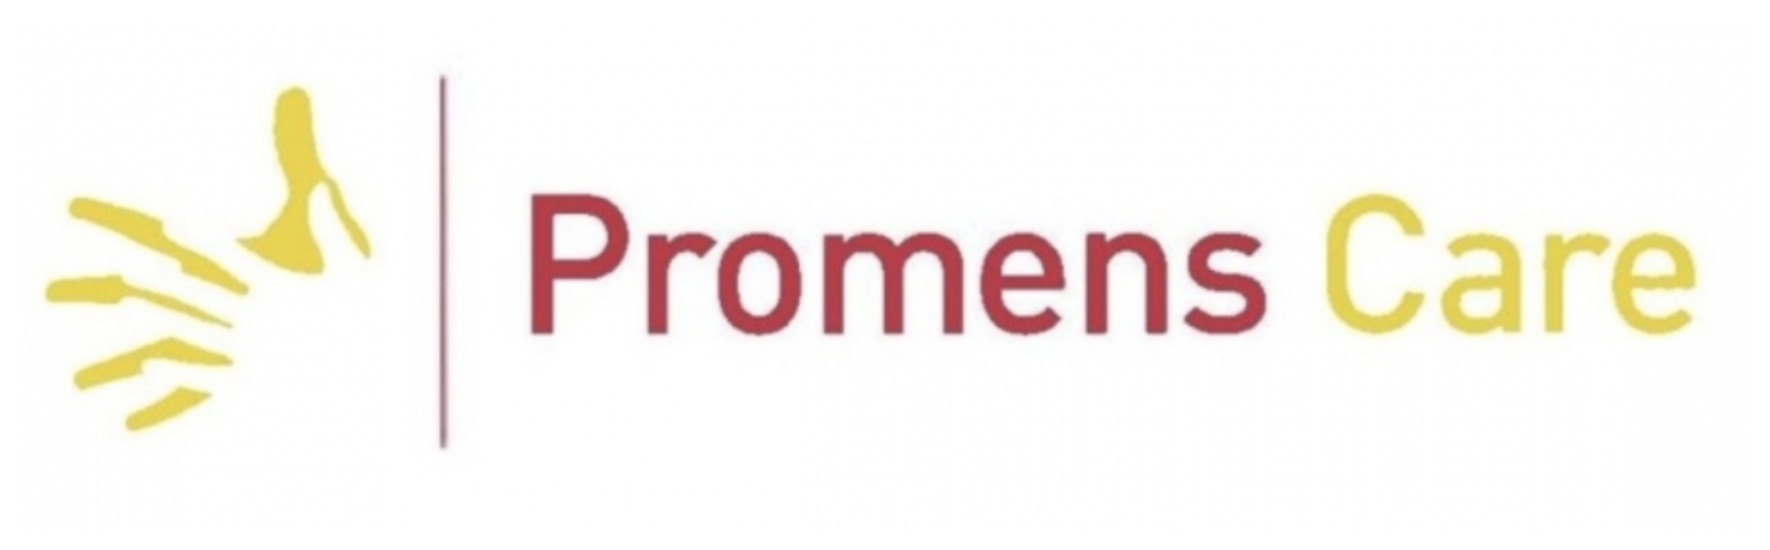 Promenscare logo case merkprominentie